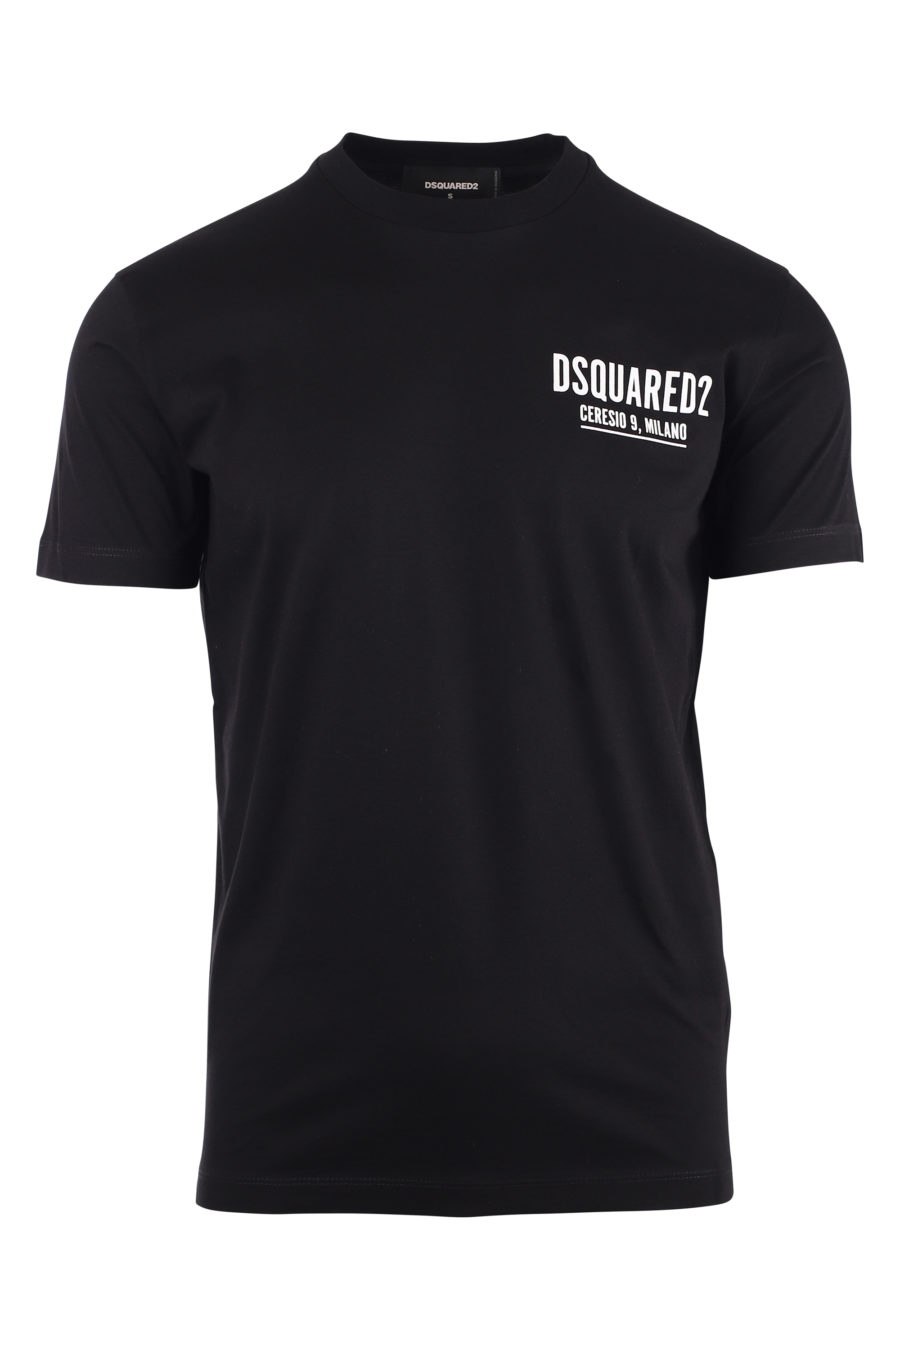 T-shirt schwarz mit kleinem Logo ceresio 9 - IMG 9729